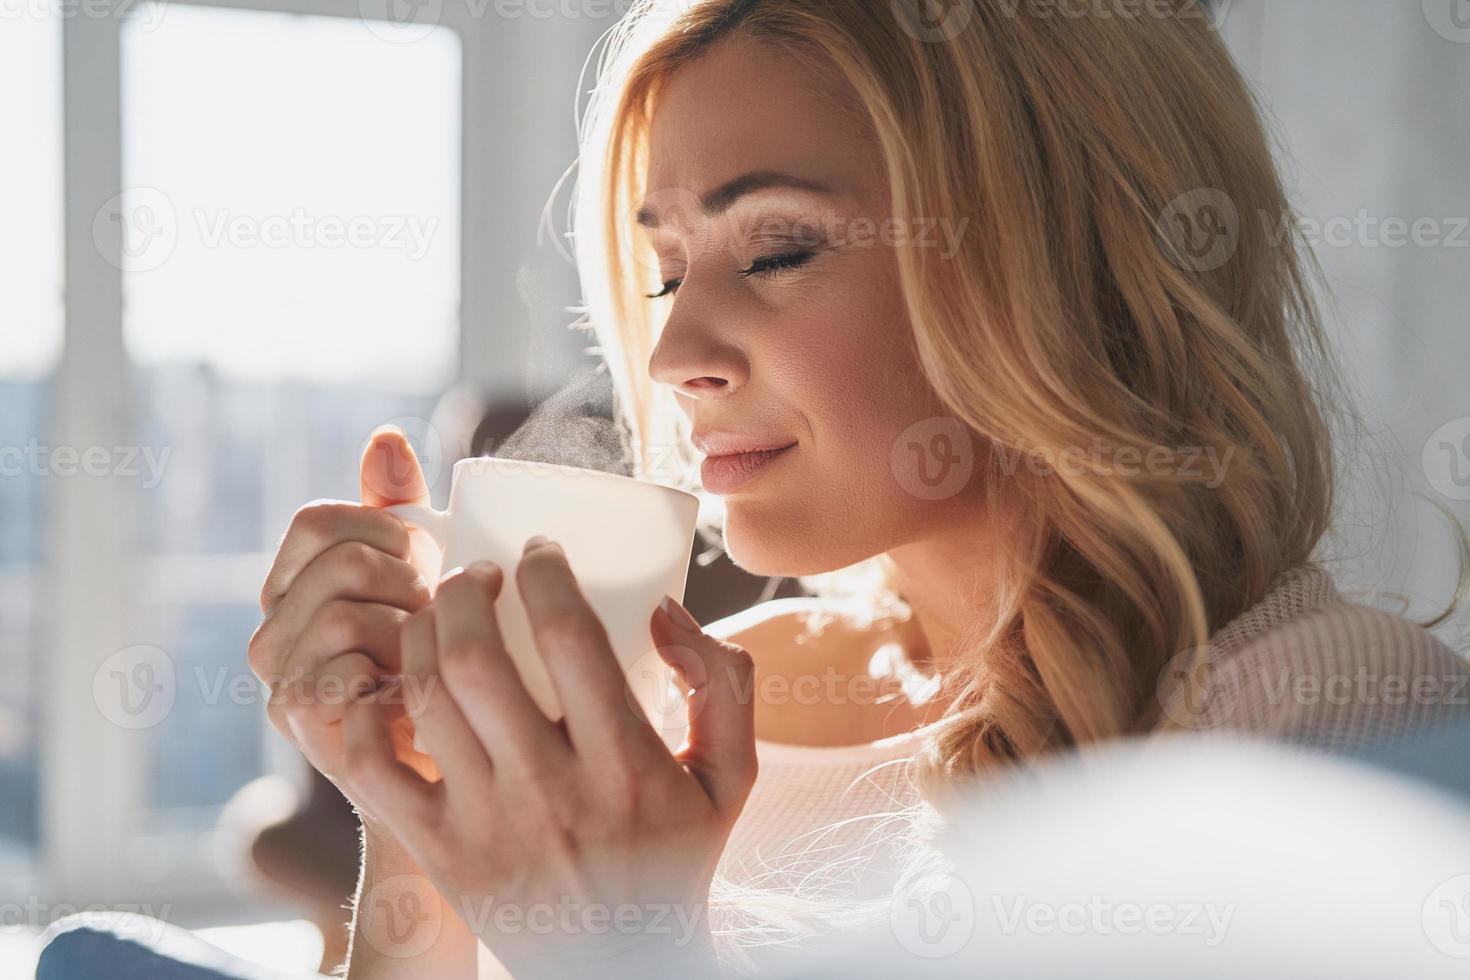 simplemente feliz. mujer joven atractiva sosteniendo una taza y manteniendo los ojos cerrados con una sonrisa mientras pasa tiempo en casa foto